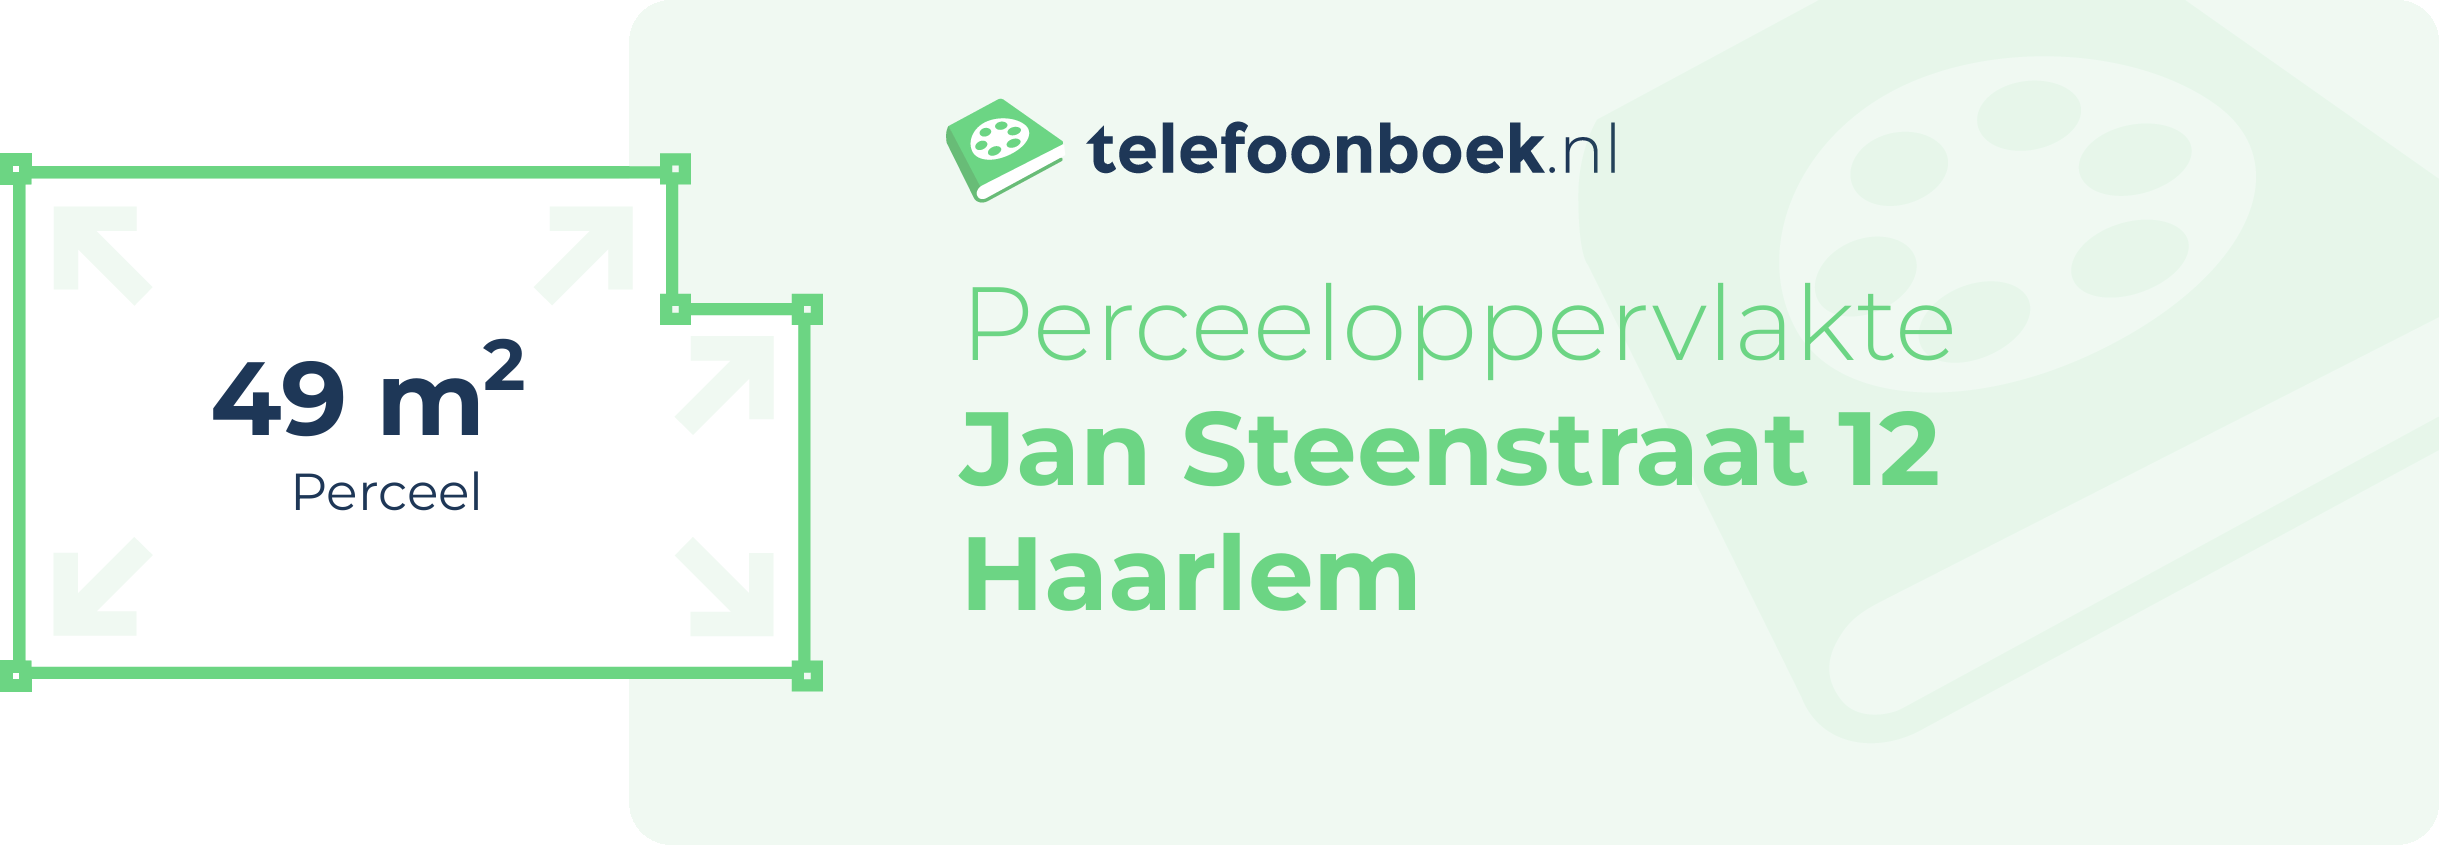 Perceeloppervlakte Jan Steenstraat 12 Haarlem